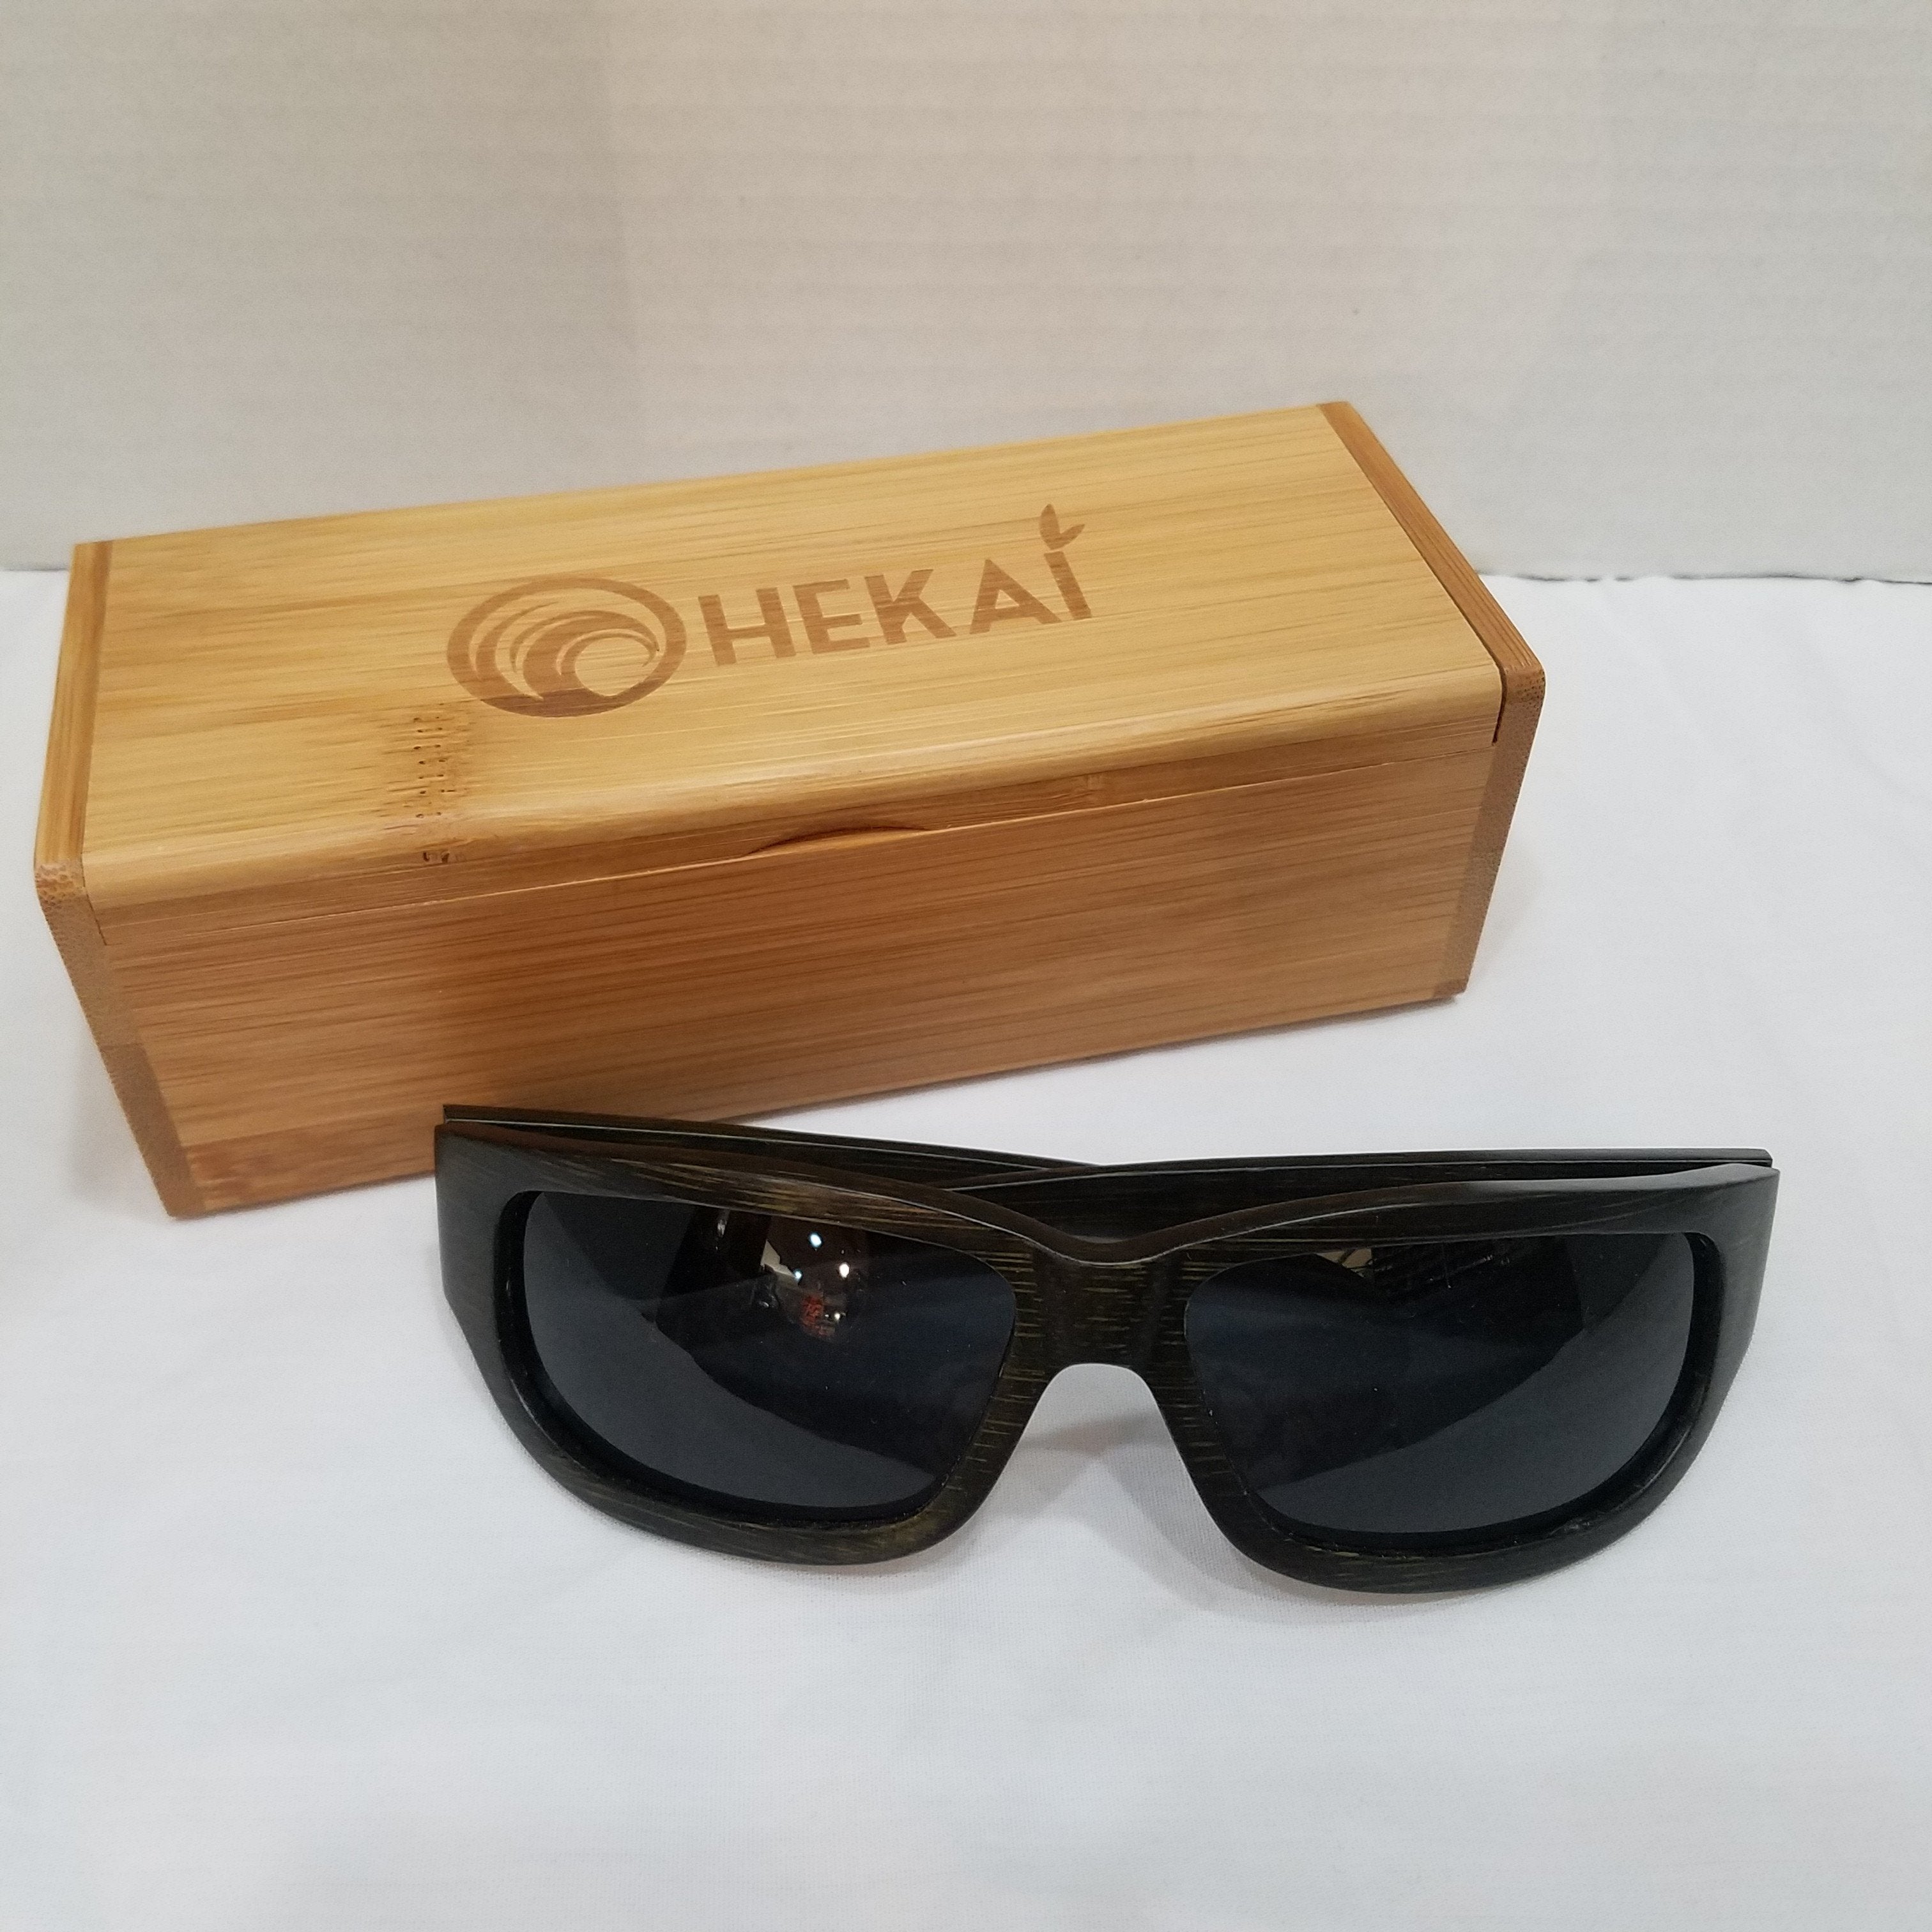 Waimea Ohekai Bamboo Sunglasses